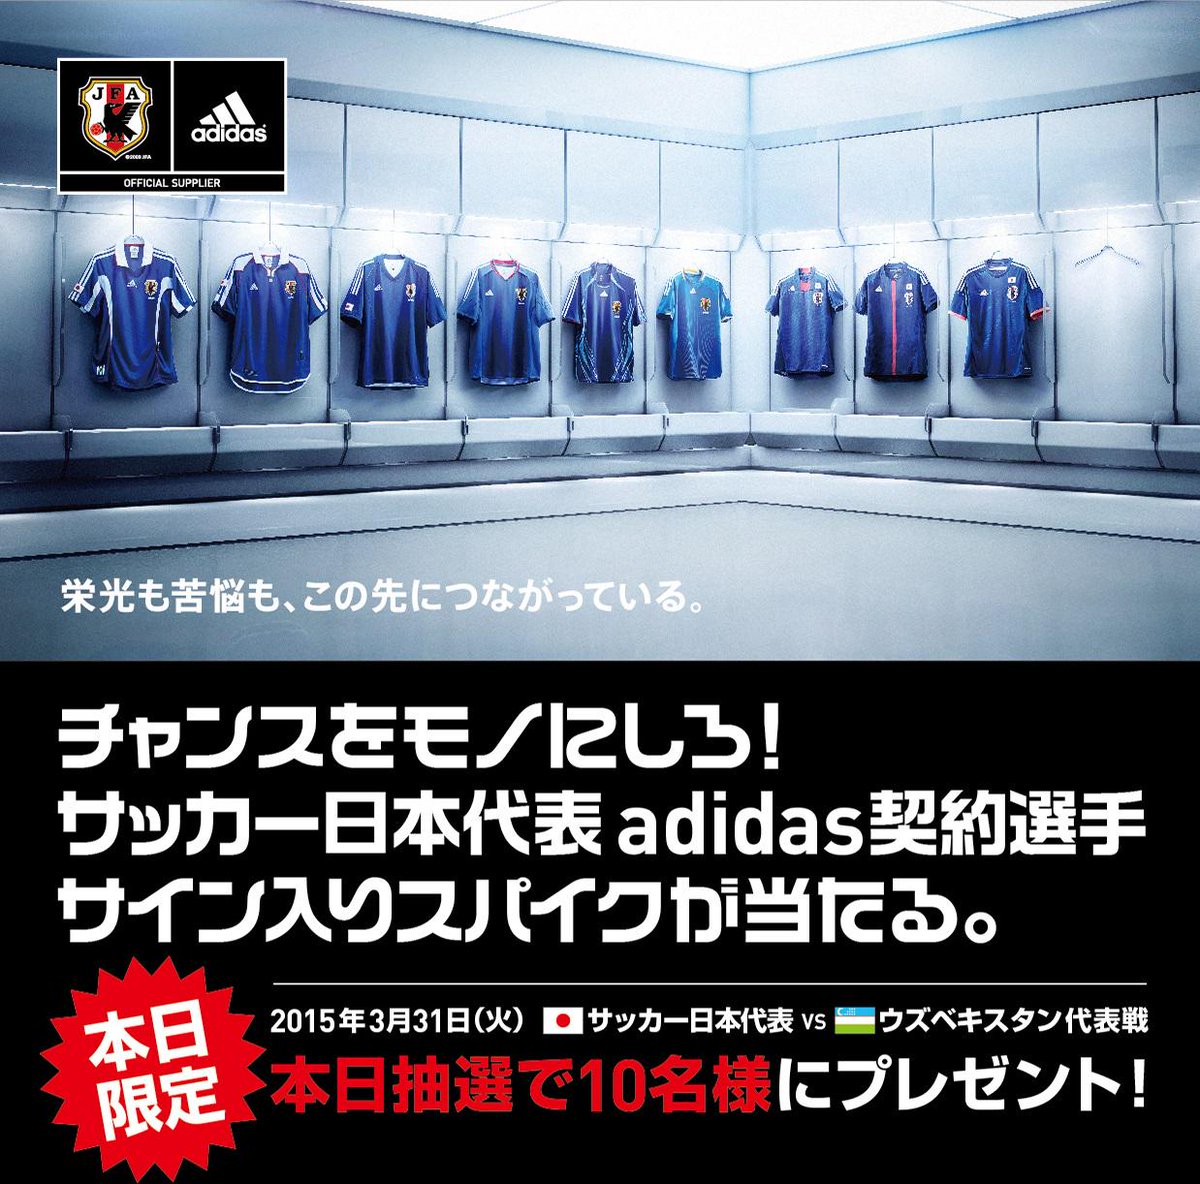 アディダス ジャパン Adidasからのチャンスをモノにしろ 試合会場来場者限定 日本代表adidas契約選手サイン入りグッズキャンペーンを実施 詳しくは試合会場にて配布されるチラシをチェック Http T Co Esyuvmee0v